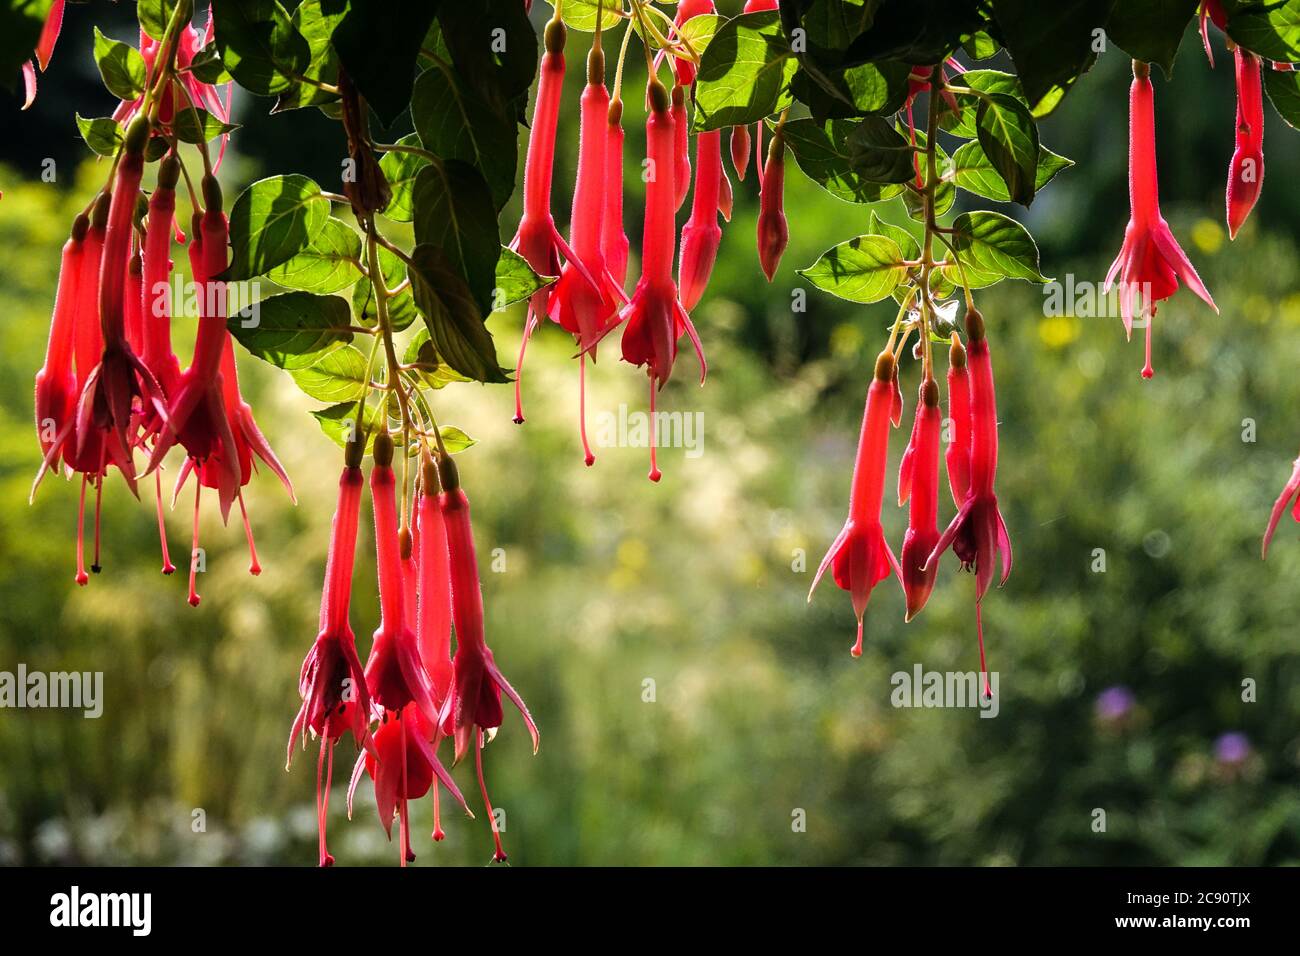 Flores rojas que cuelgan fotografías e imágenes de alta resolución - Alamy